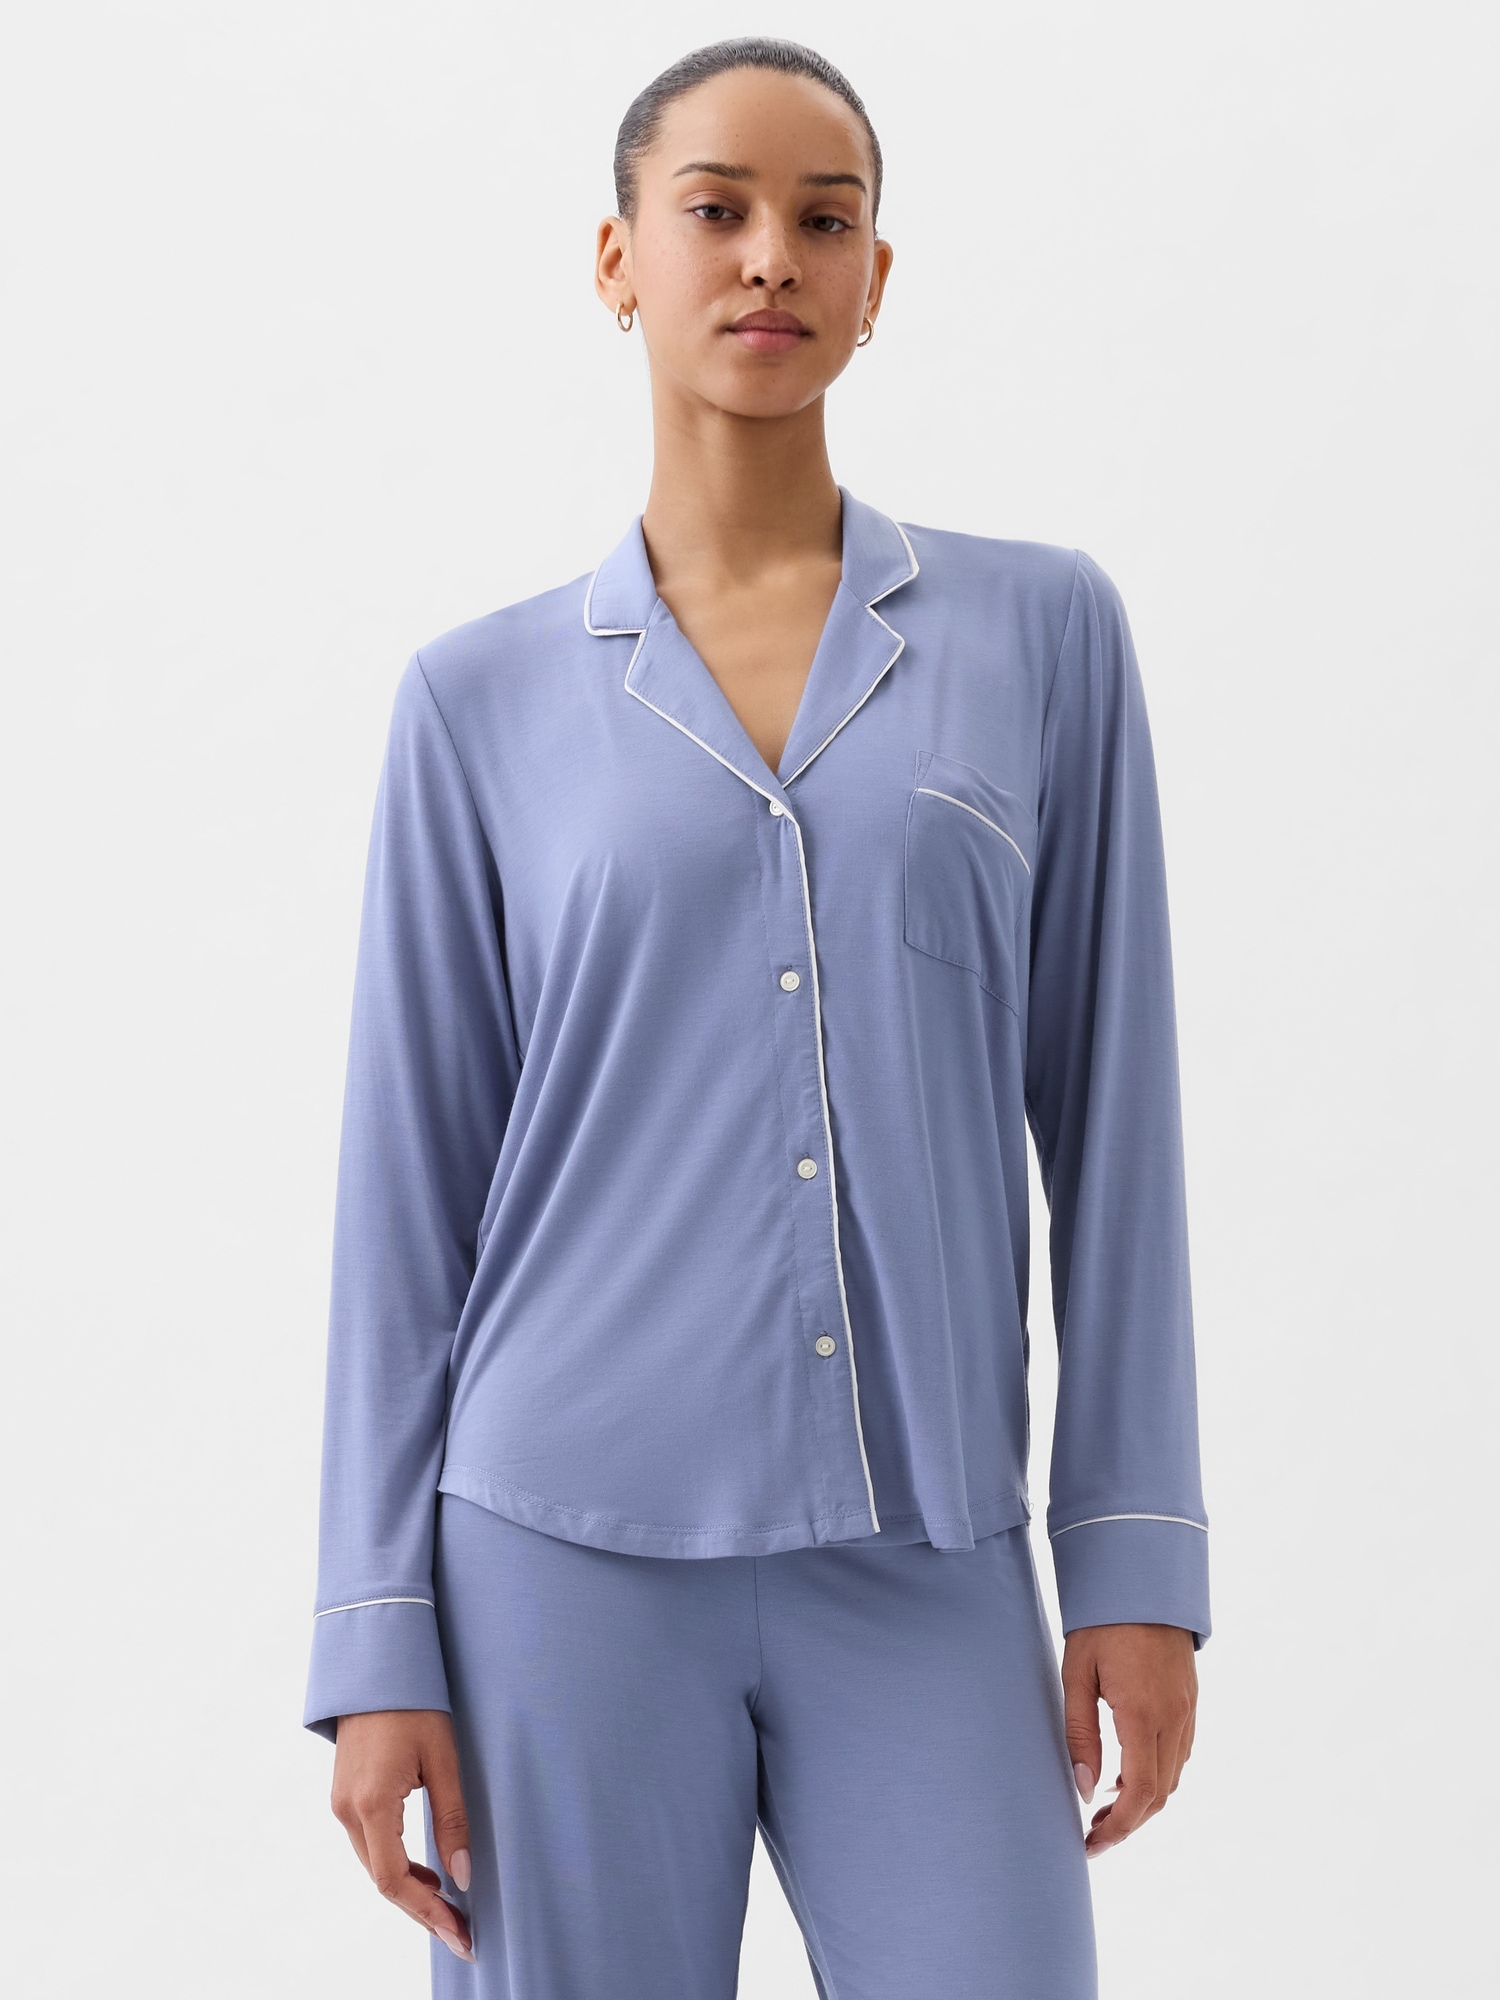 Silk Pajamas vs. Modal Pajamas